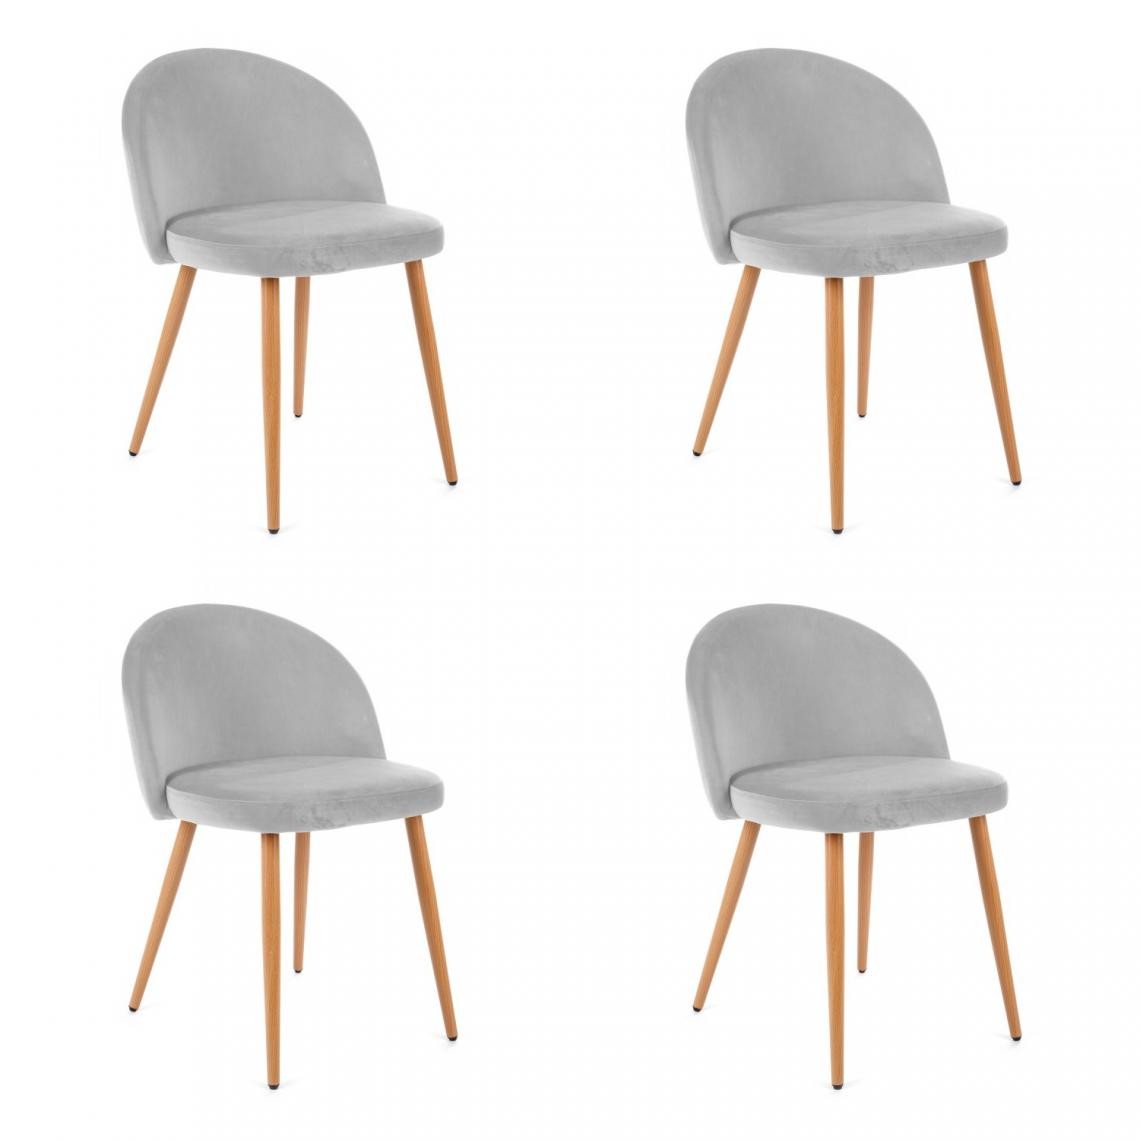 Hucoco - KARLI - Chaise rembourrée 4 pcs style moderne salon/salle à manger - 76x53x43 - Pieds en métal - Gris - Chaises